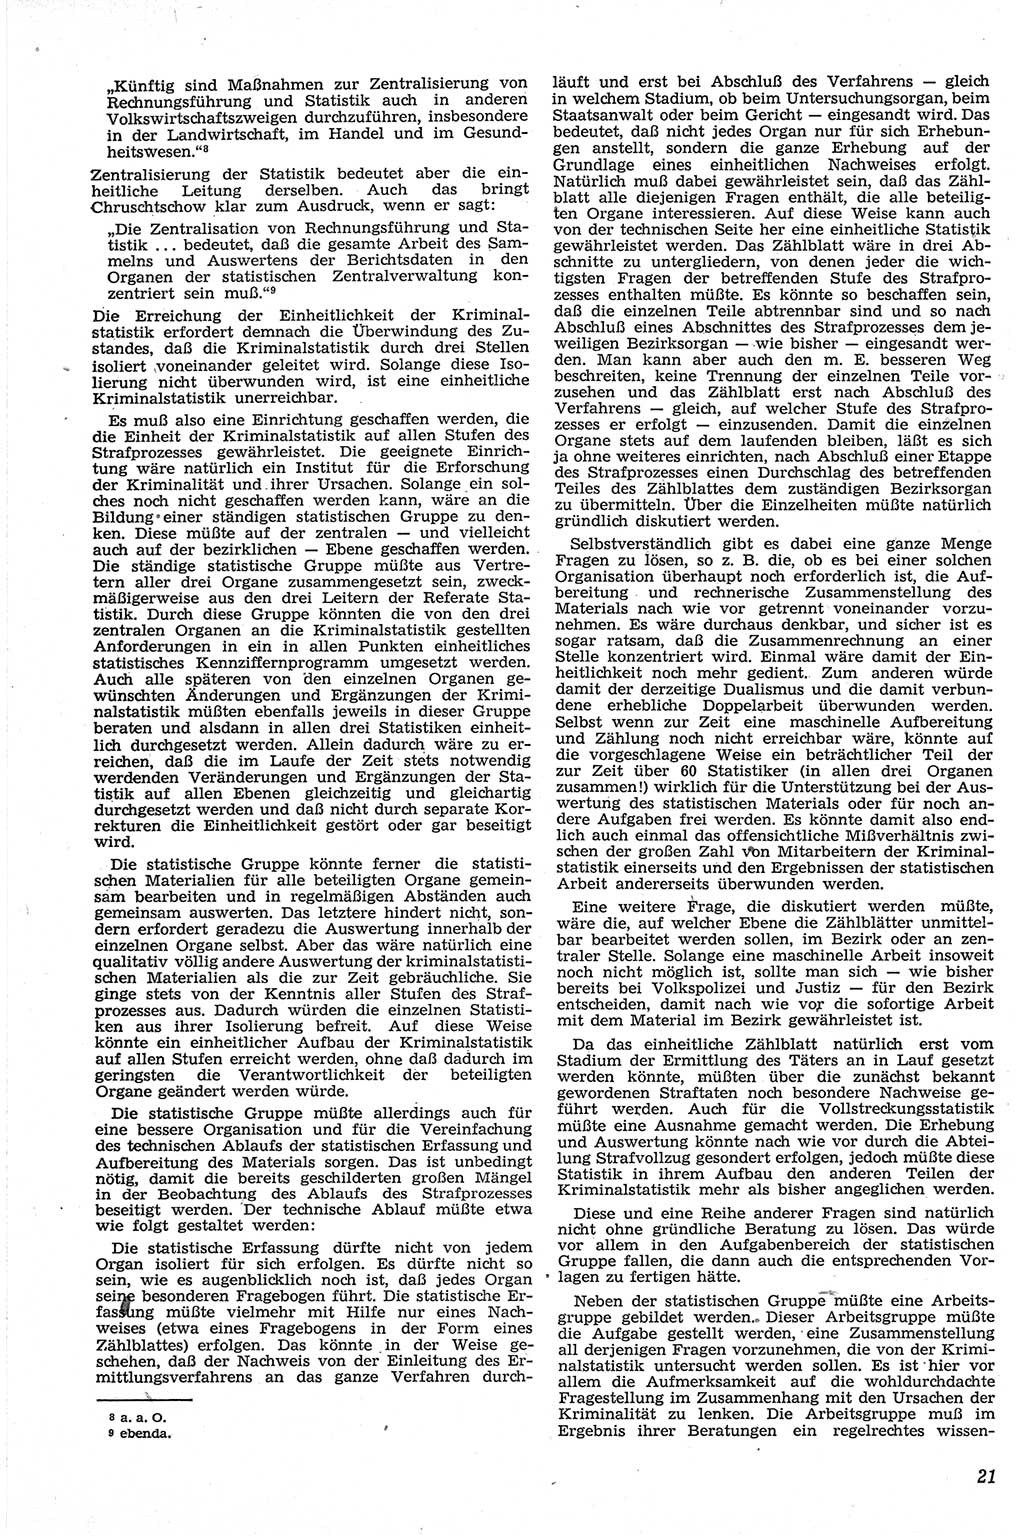 Neue Justiz (NJ), Zeitschrift für Recht und Rechtswissenschaft [Deutsche Demokratische Republik (DDR)], 13. Jahrgang 1959, Seite 21 (NJ DDR 1959, S. 21)